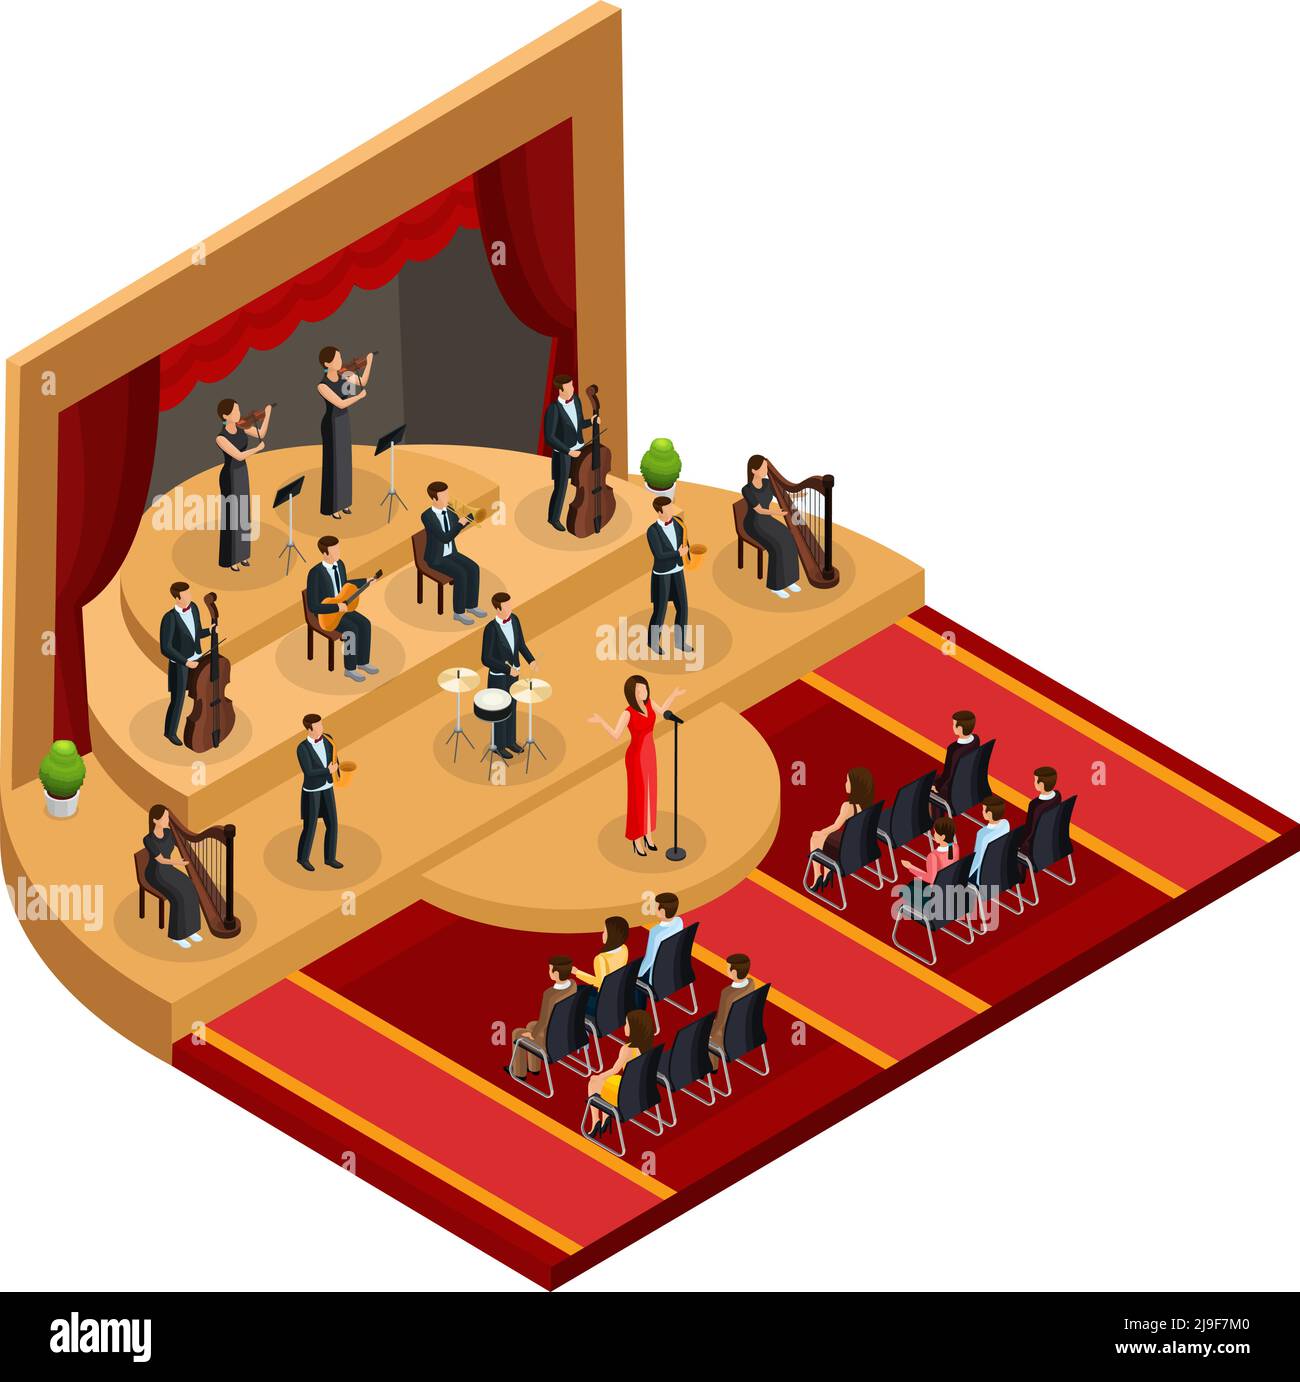 Concept de performance d'opéra classique isométrique avec chanteuse et musiciens sur scène devant le public, illustration vectorielle isolée Illustration de Vecteur